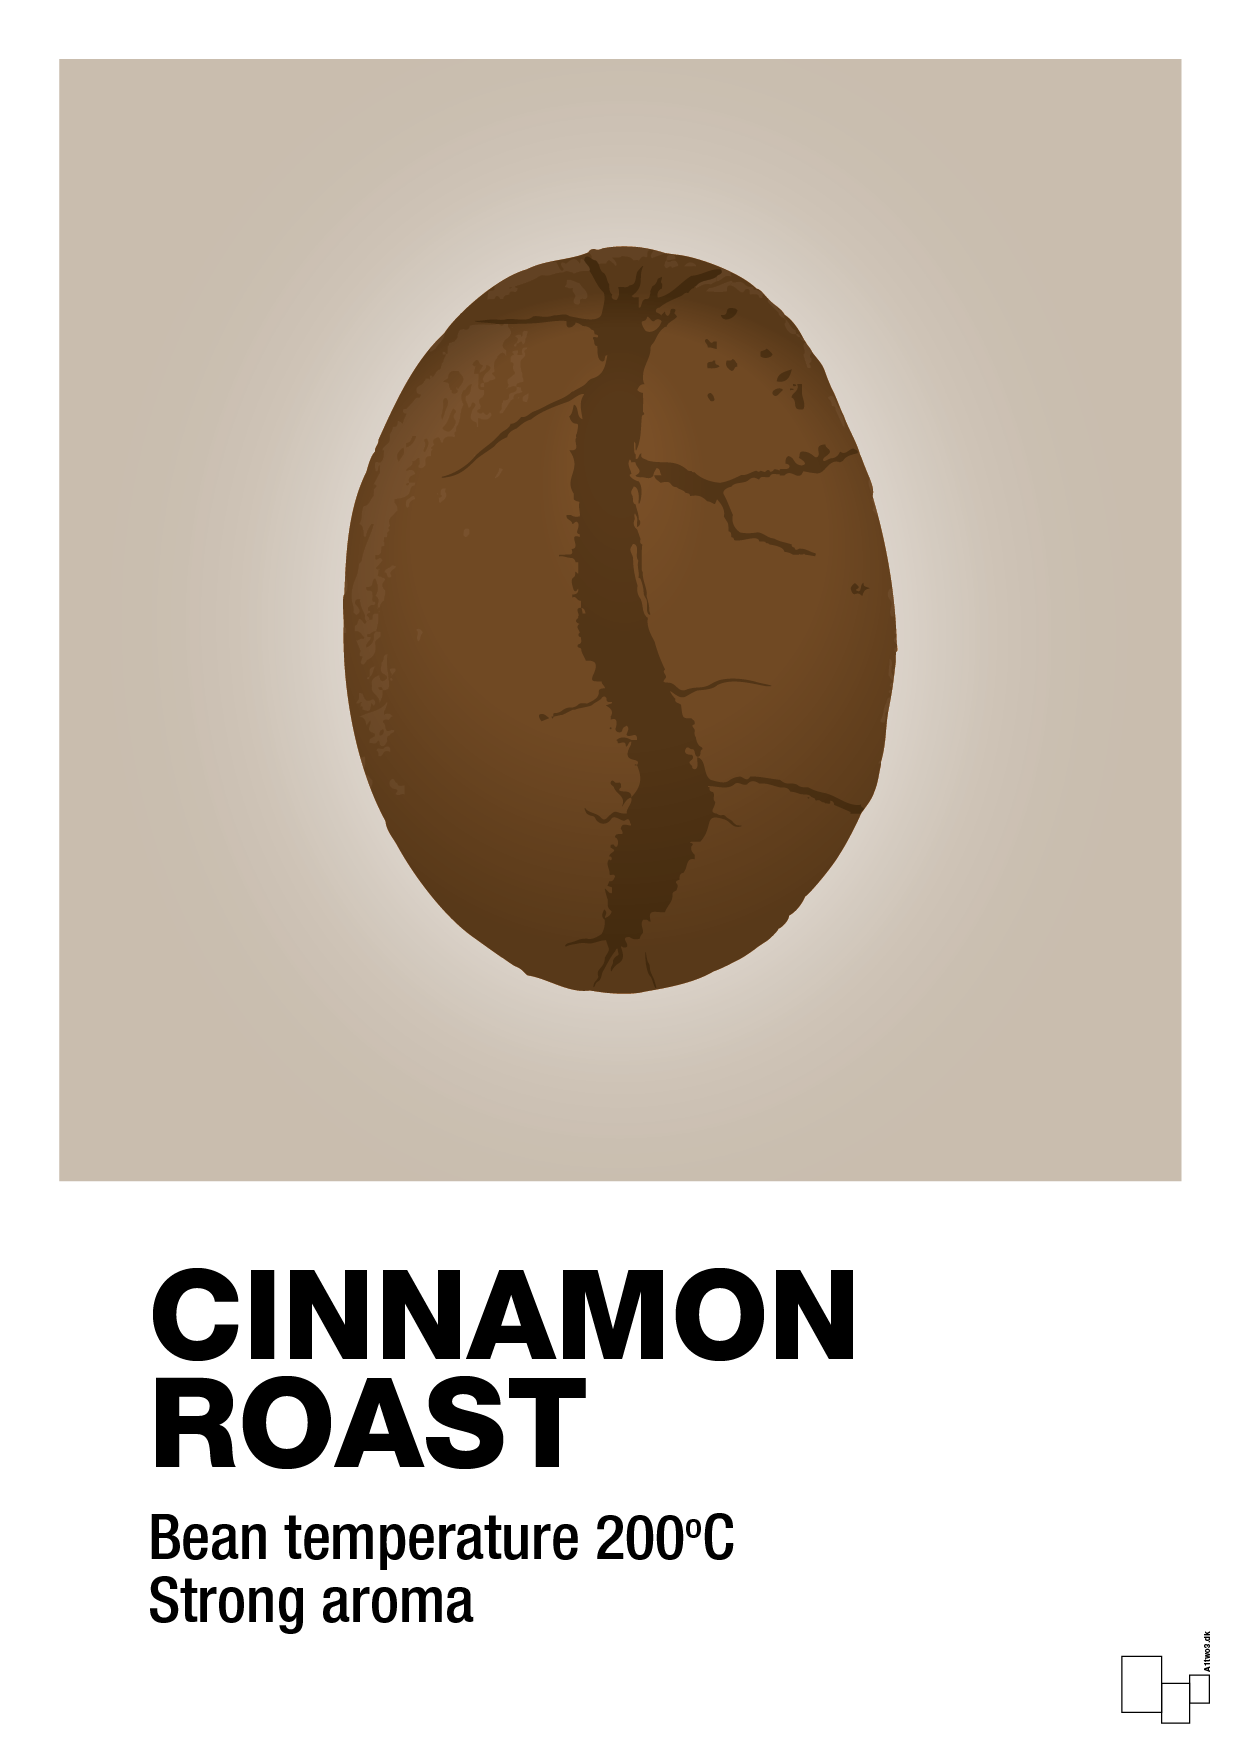 cinnamom roast - Plakat med Mad & Drikke i Creamy Mushroom